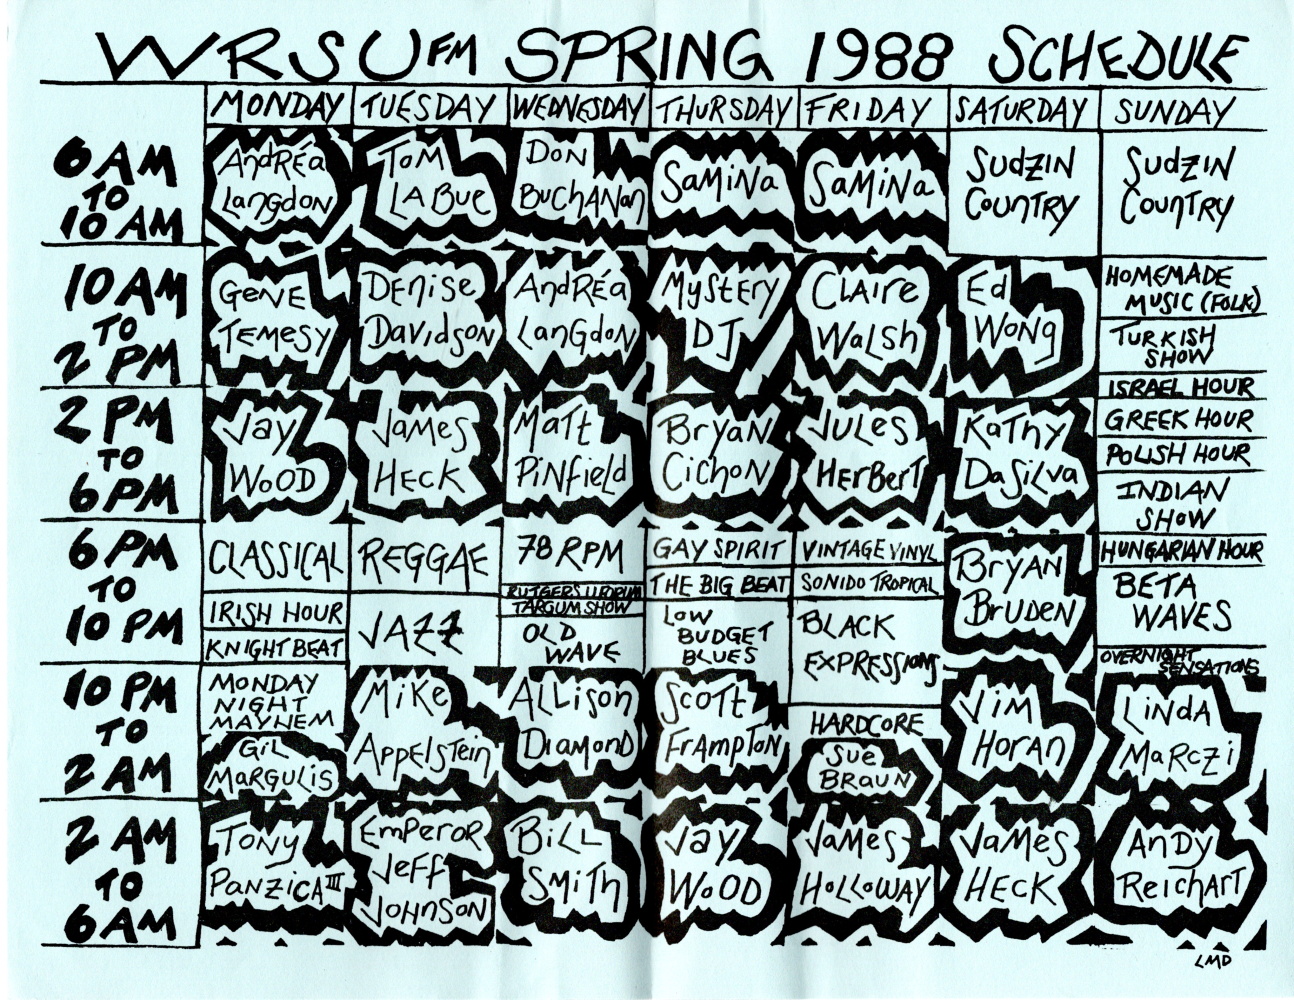 1988 Spring Program Guide